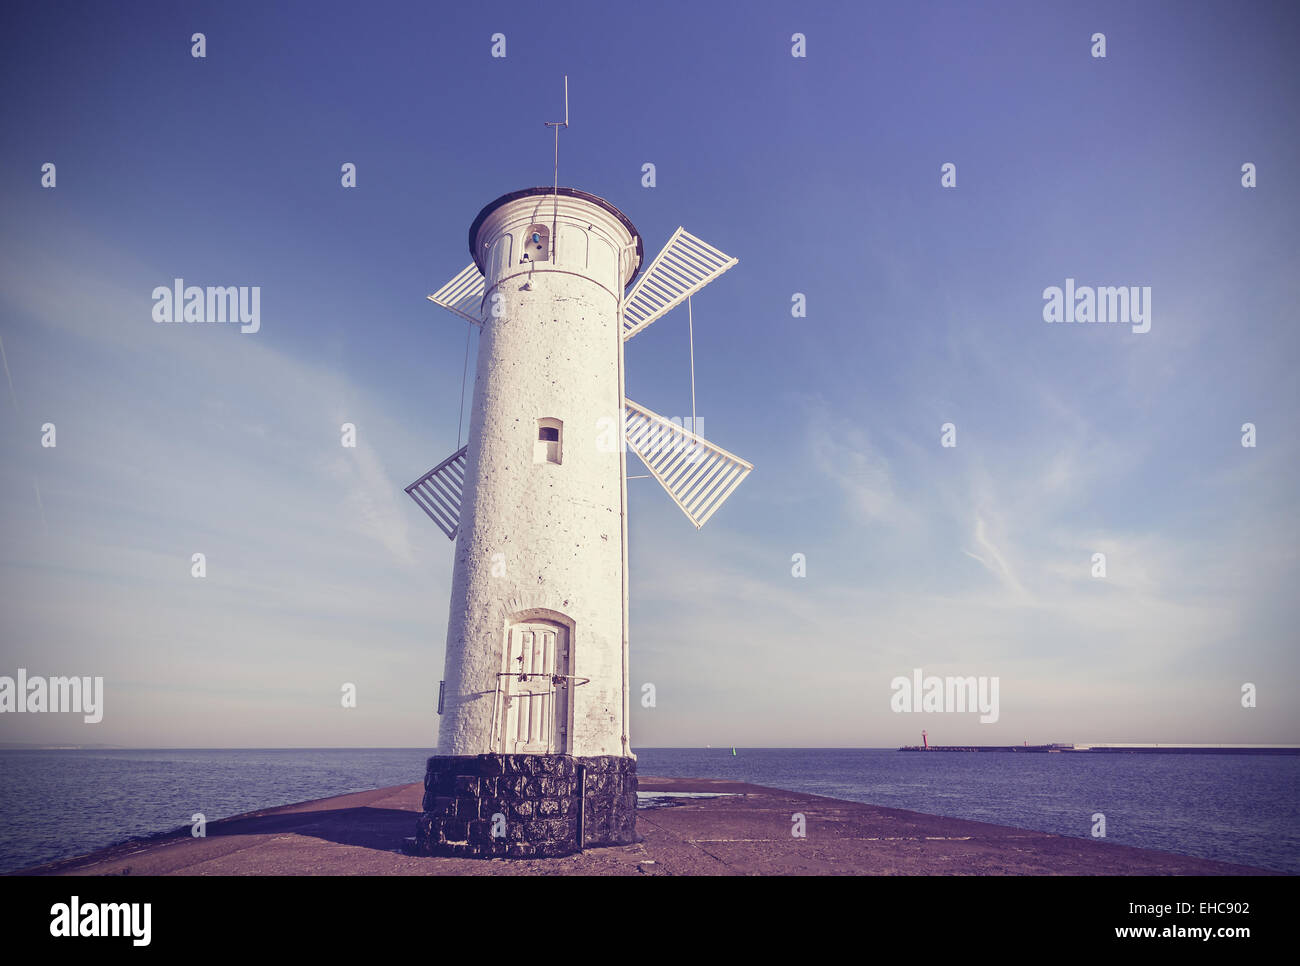 Retro-Vintage-Stil-Foto von einer alten Windmühle Leuchtturm in Swinoujscie, Polen. Stockfoto